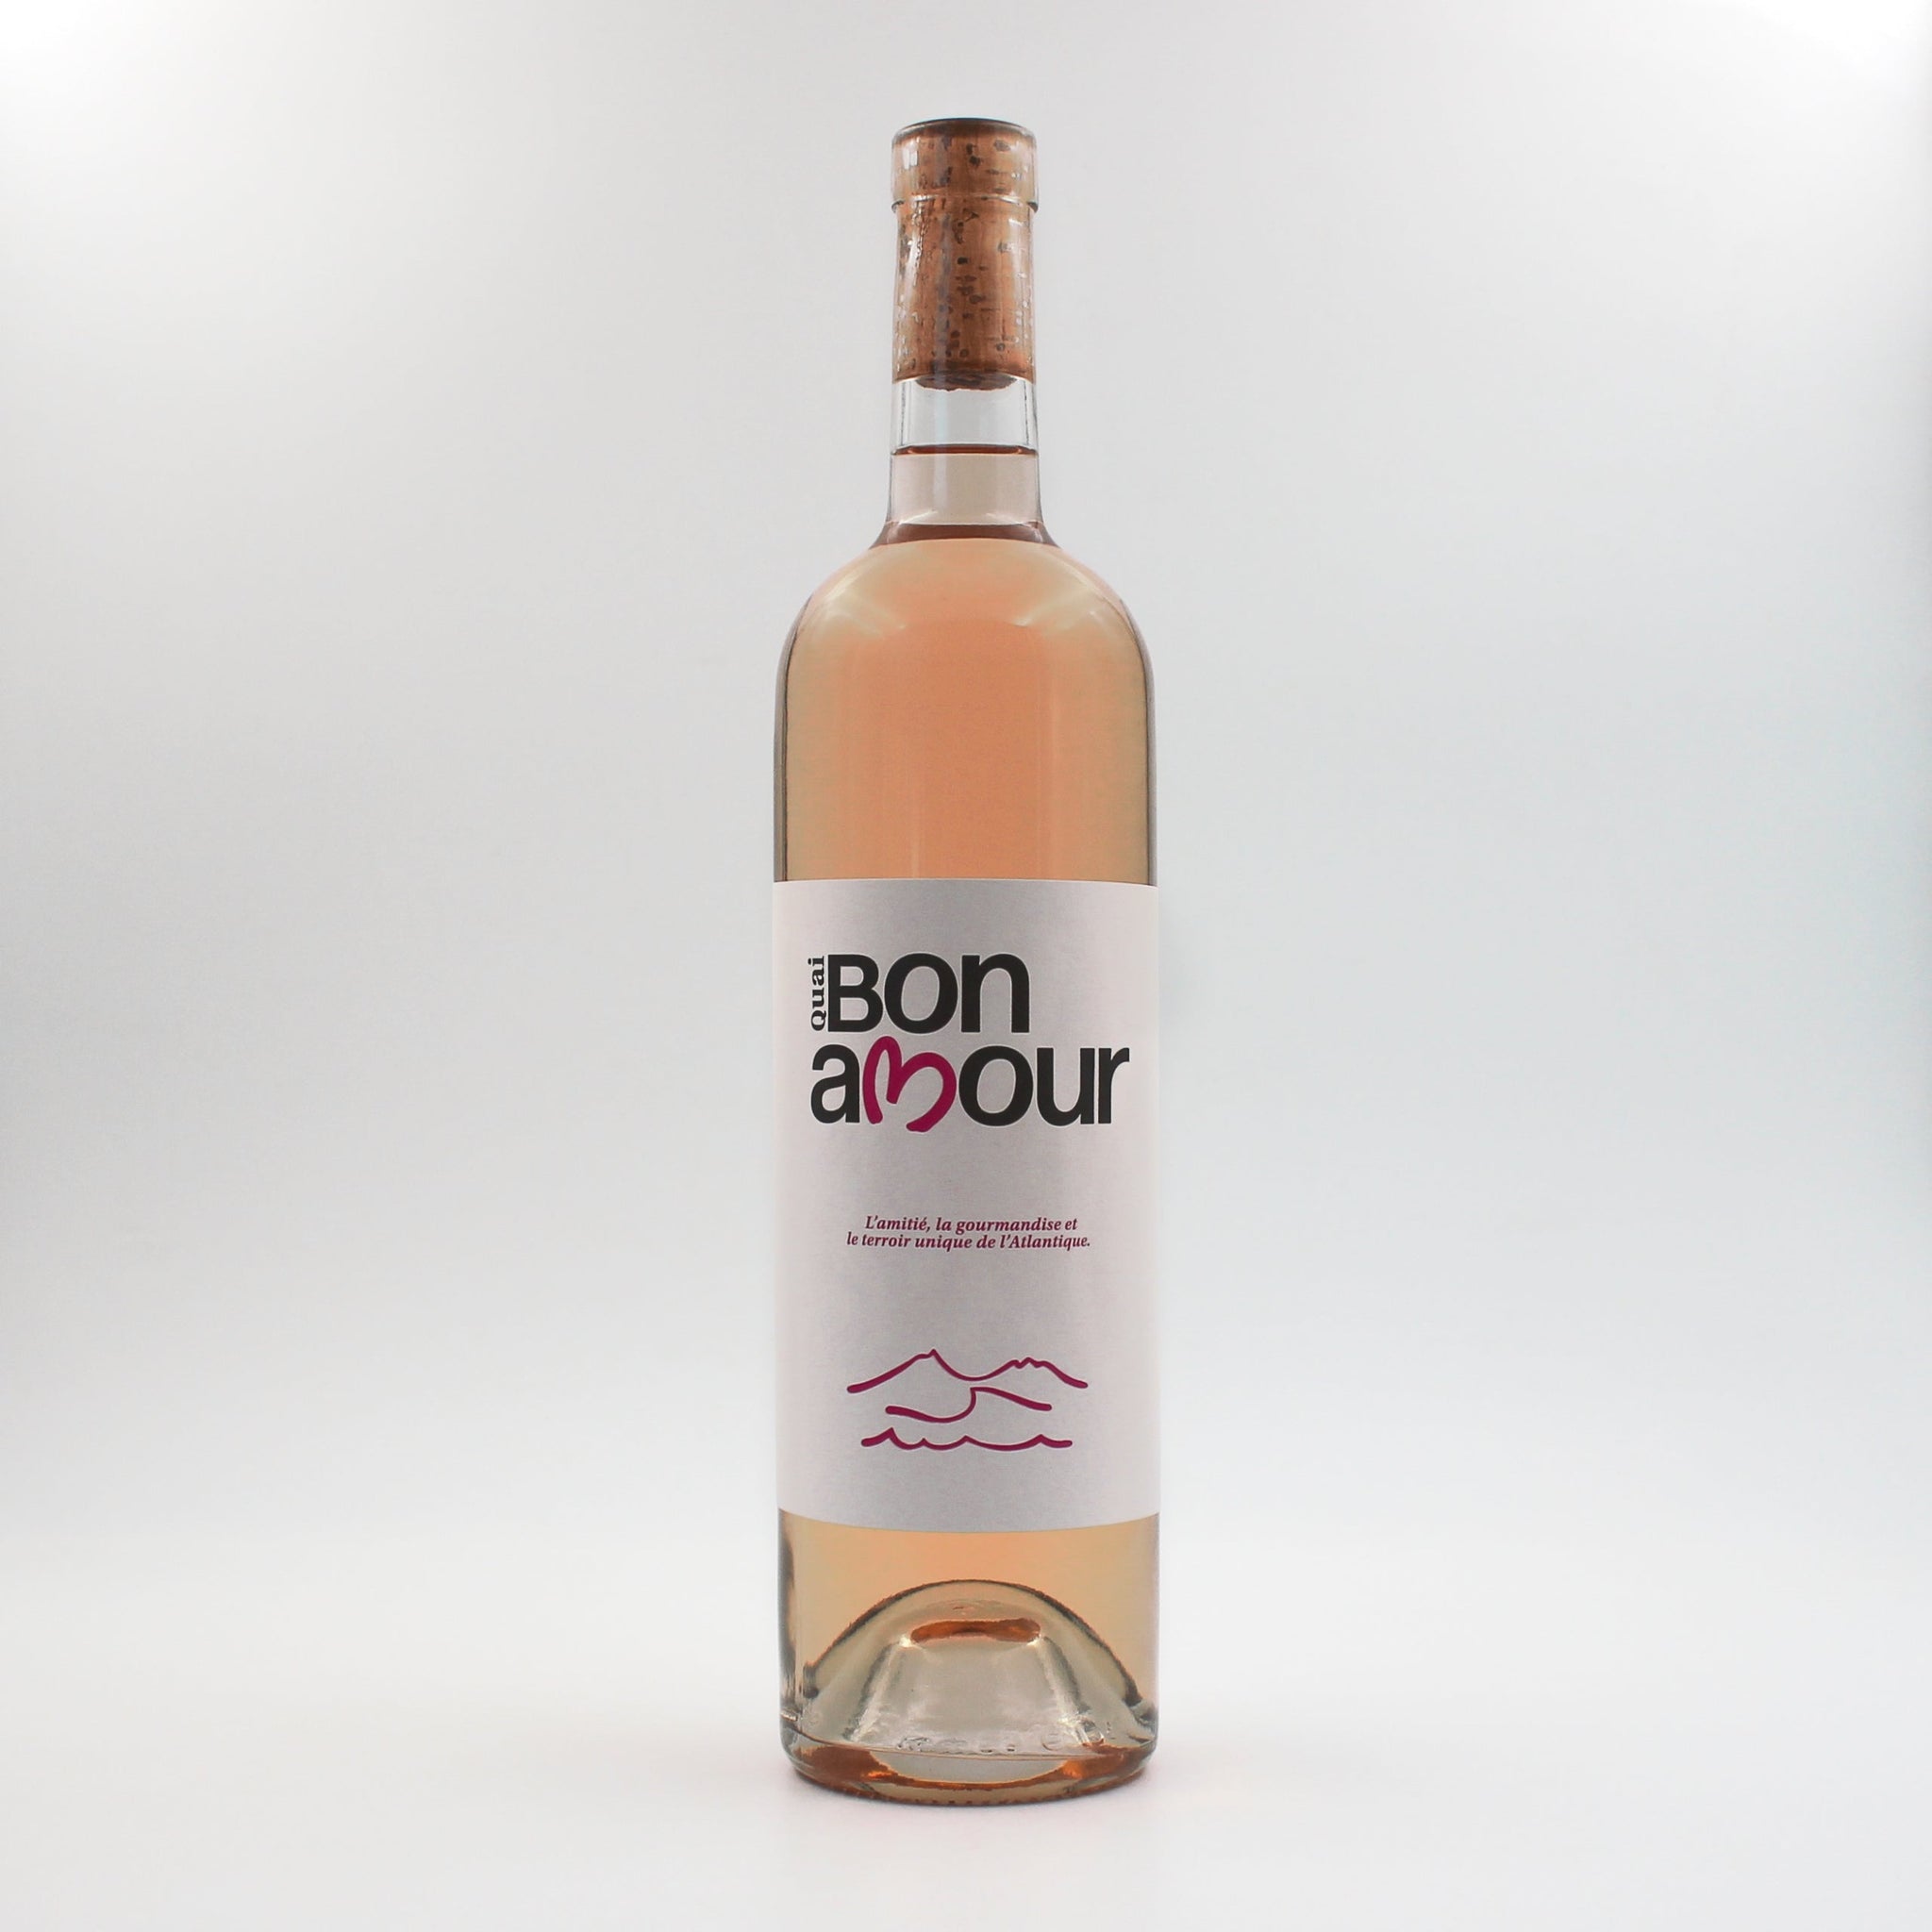 Notre rosé AOP Bordeaux